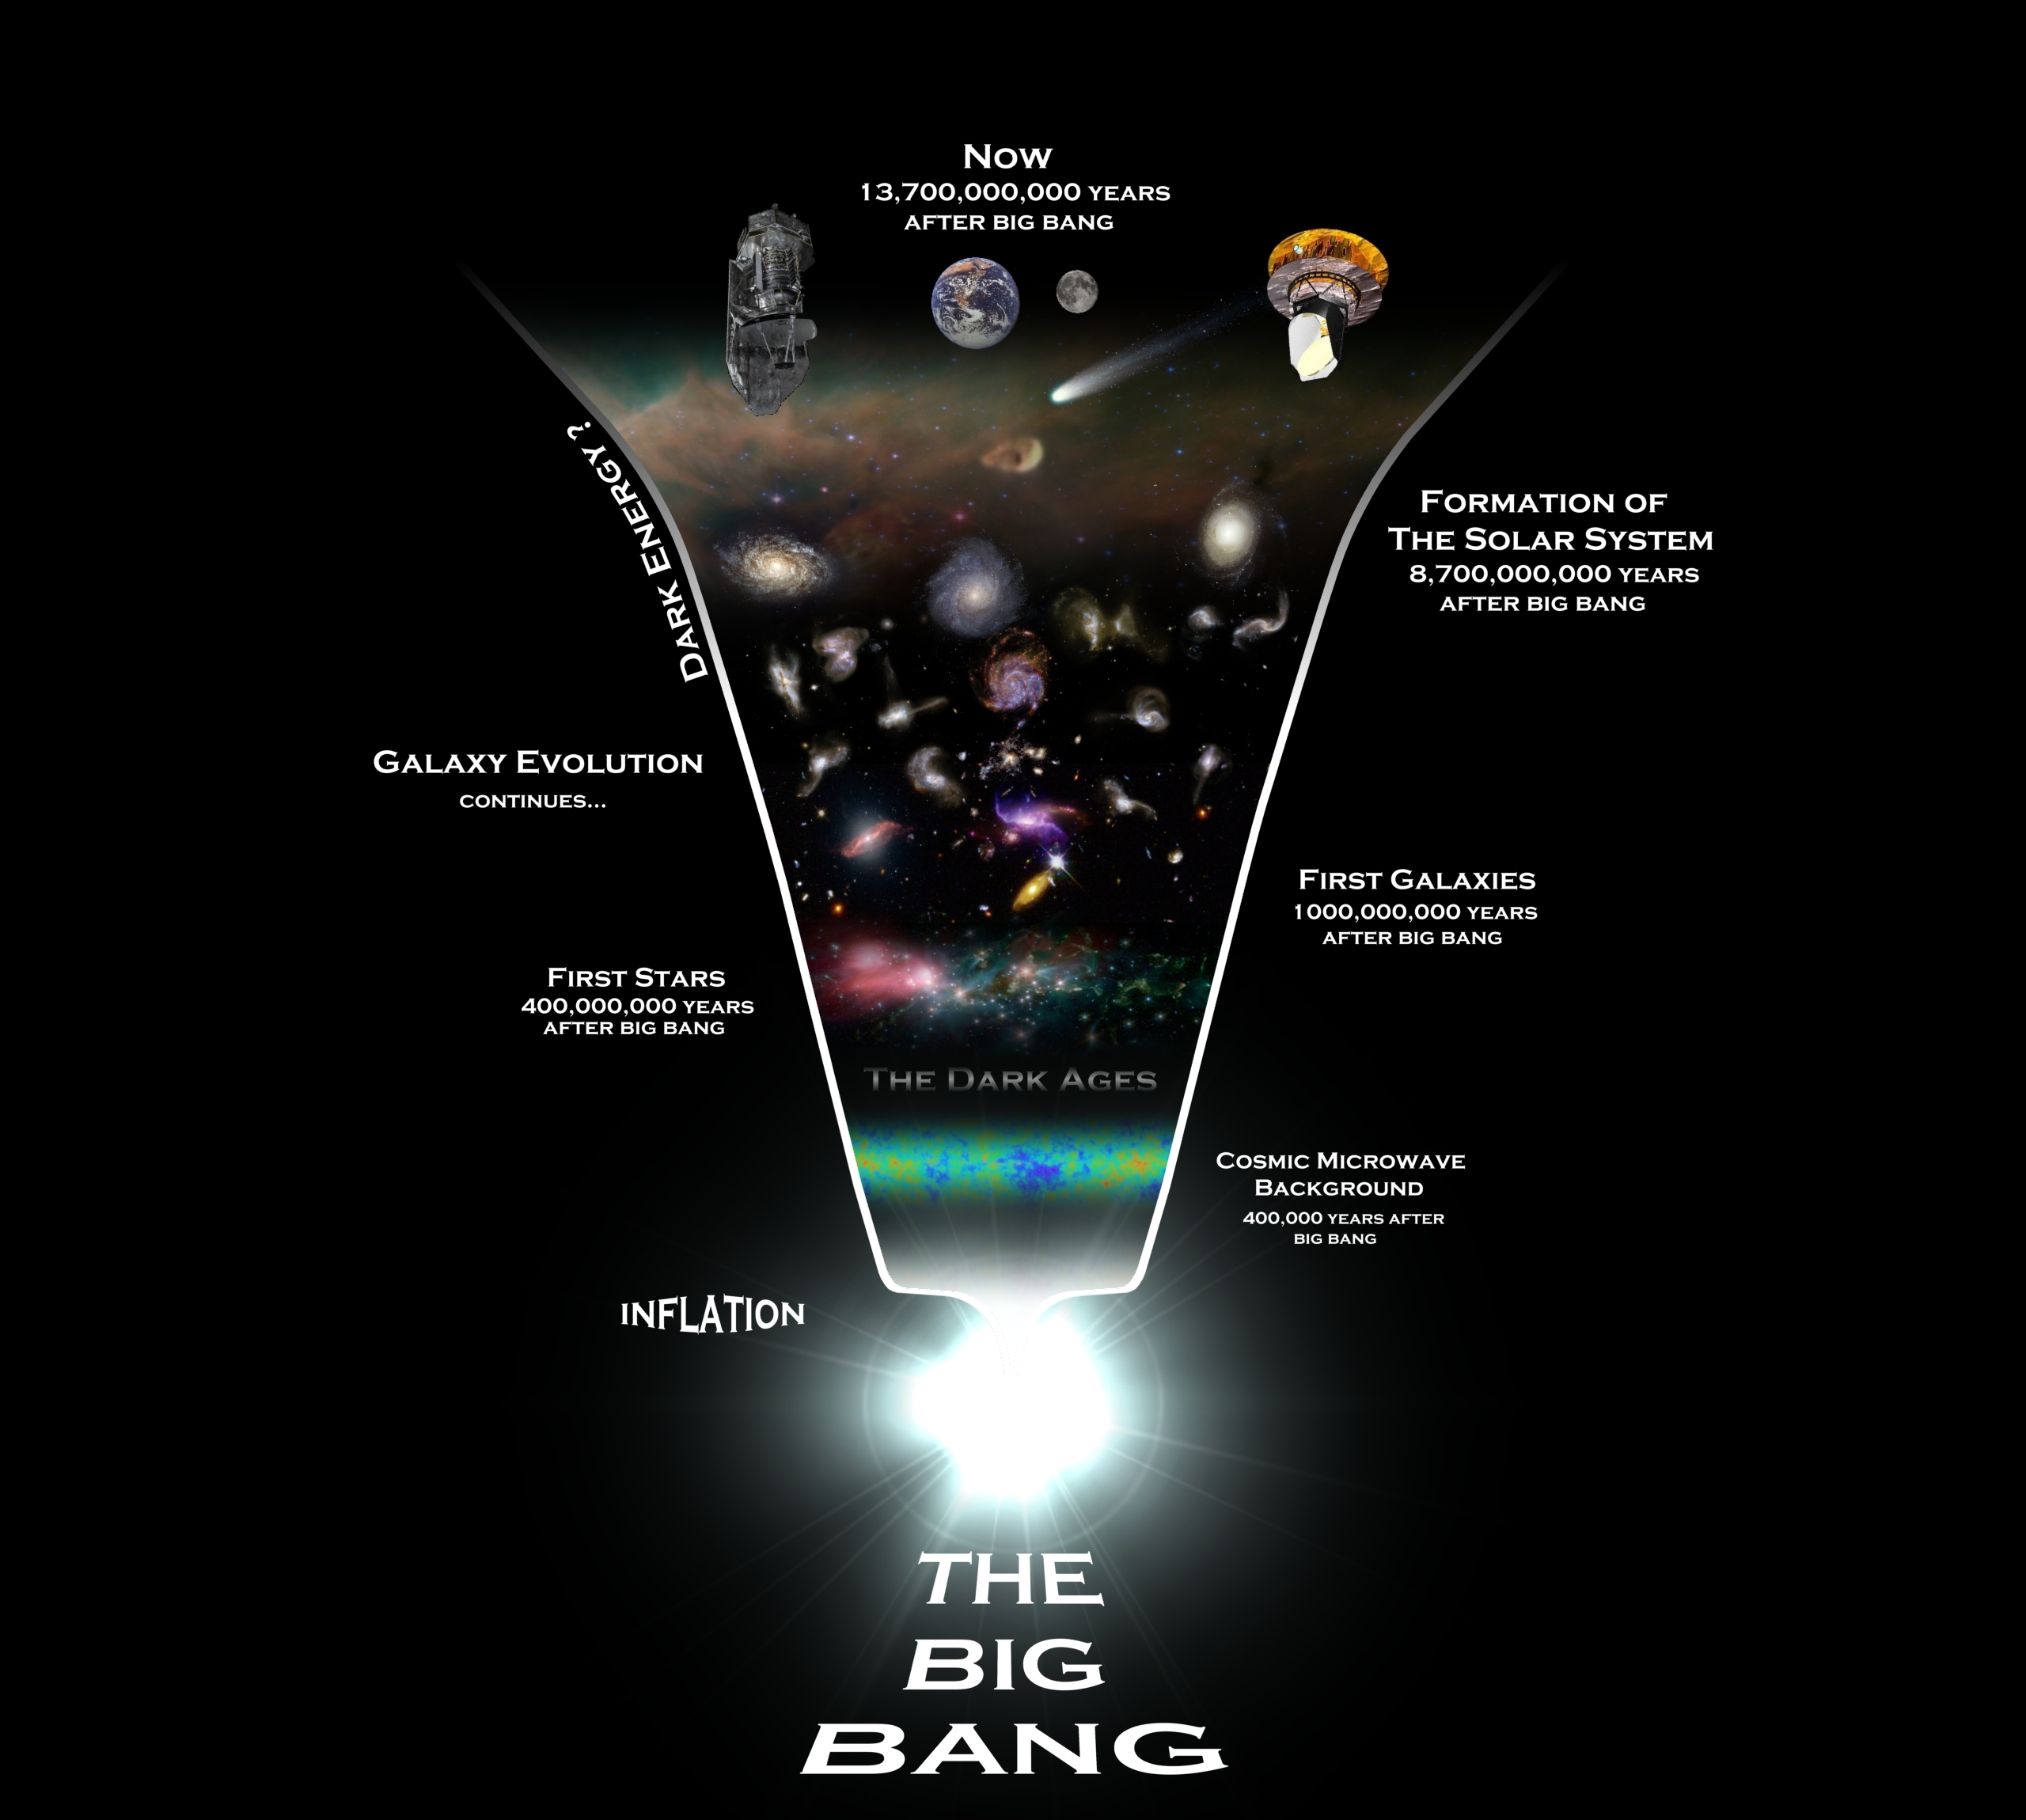 Une chronologie de l'univers observable, du Big Bang aux sondes Planck et Herschel schématisant son passé et son évolution. © Rhys Taylor, Cardiff University